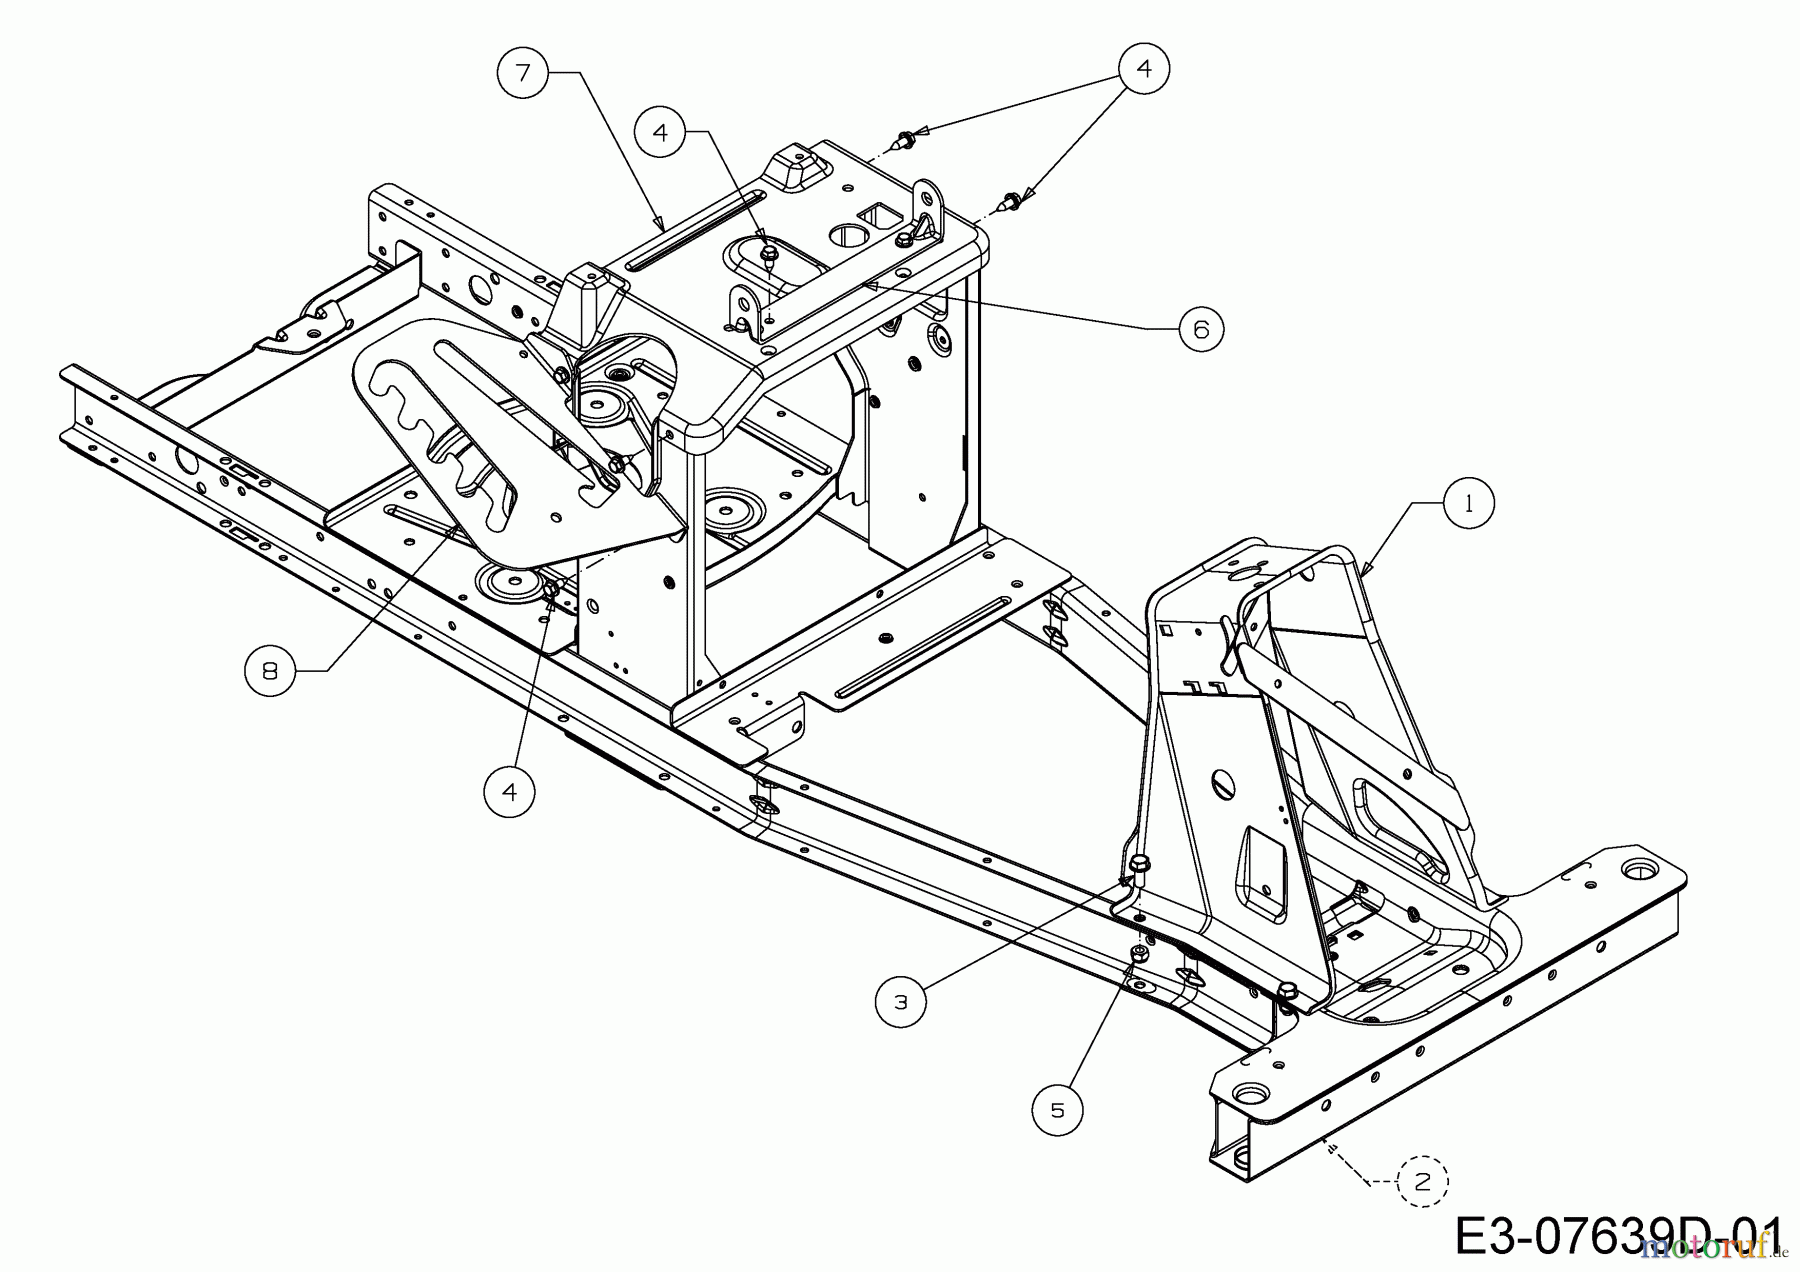  WOLF-Garten Expert Rasentraktoren Scooter Pro 13B226HD650  (2016) Rahmen